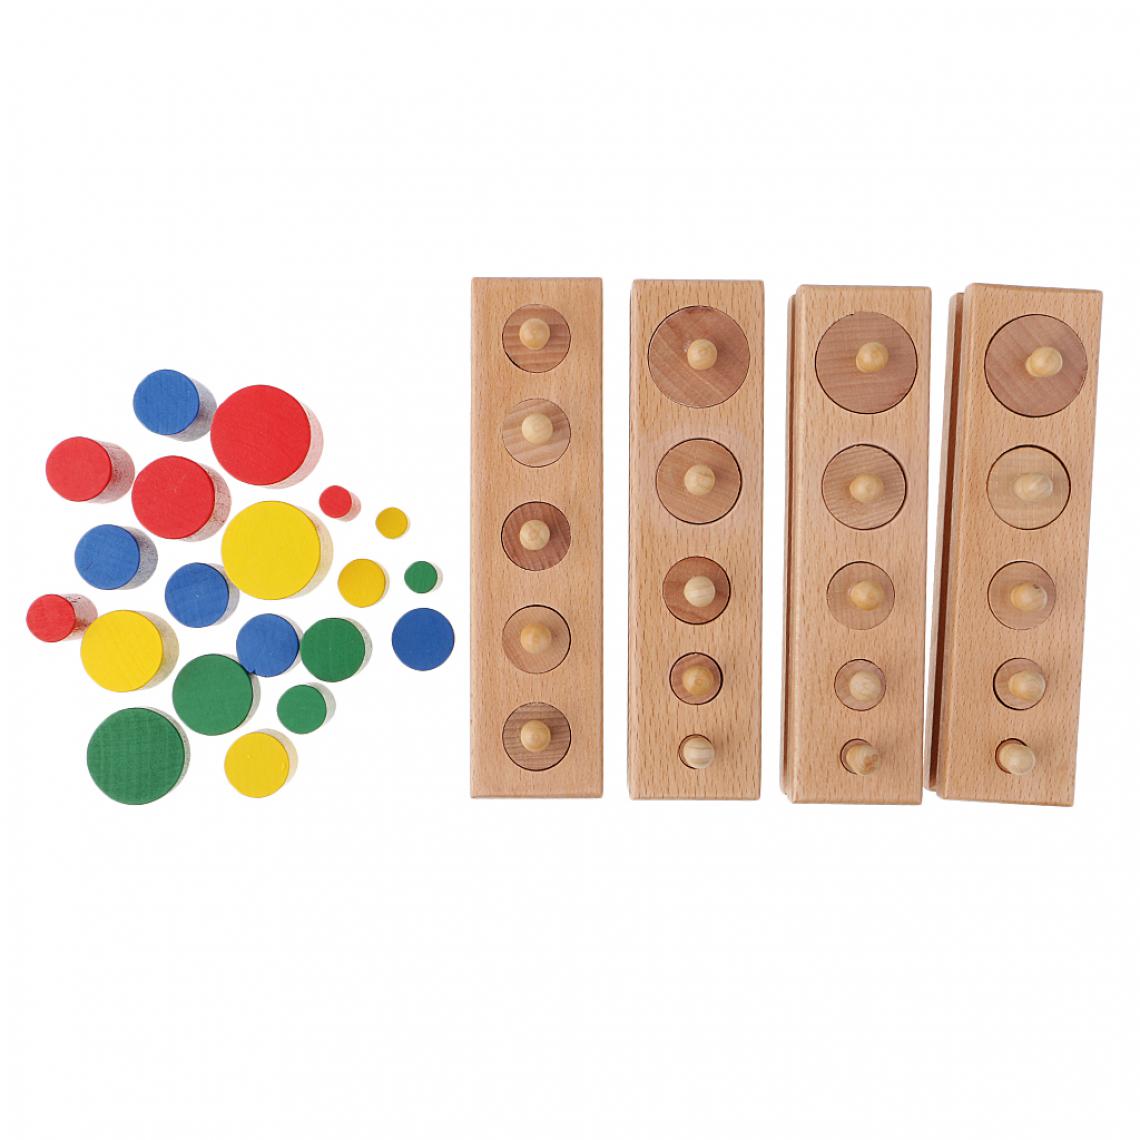 marque generique - 4pcs Coloré Montessori Jouet en Bois Cylindre Blocs Début Développement Educatif Cadeau d'Enfant Bébé - Jeux éducatifs